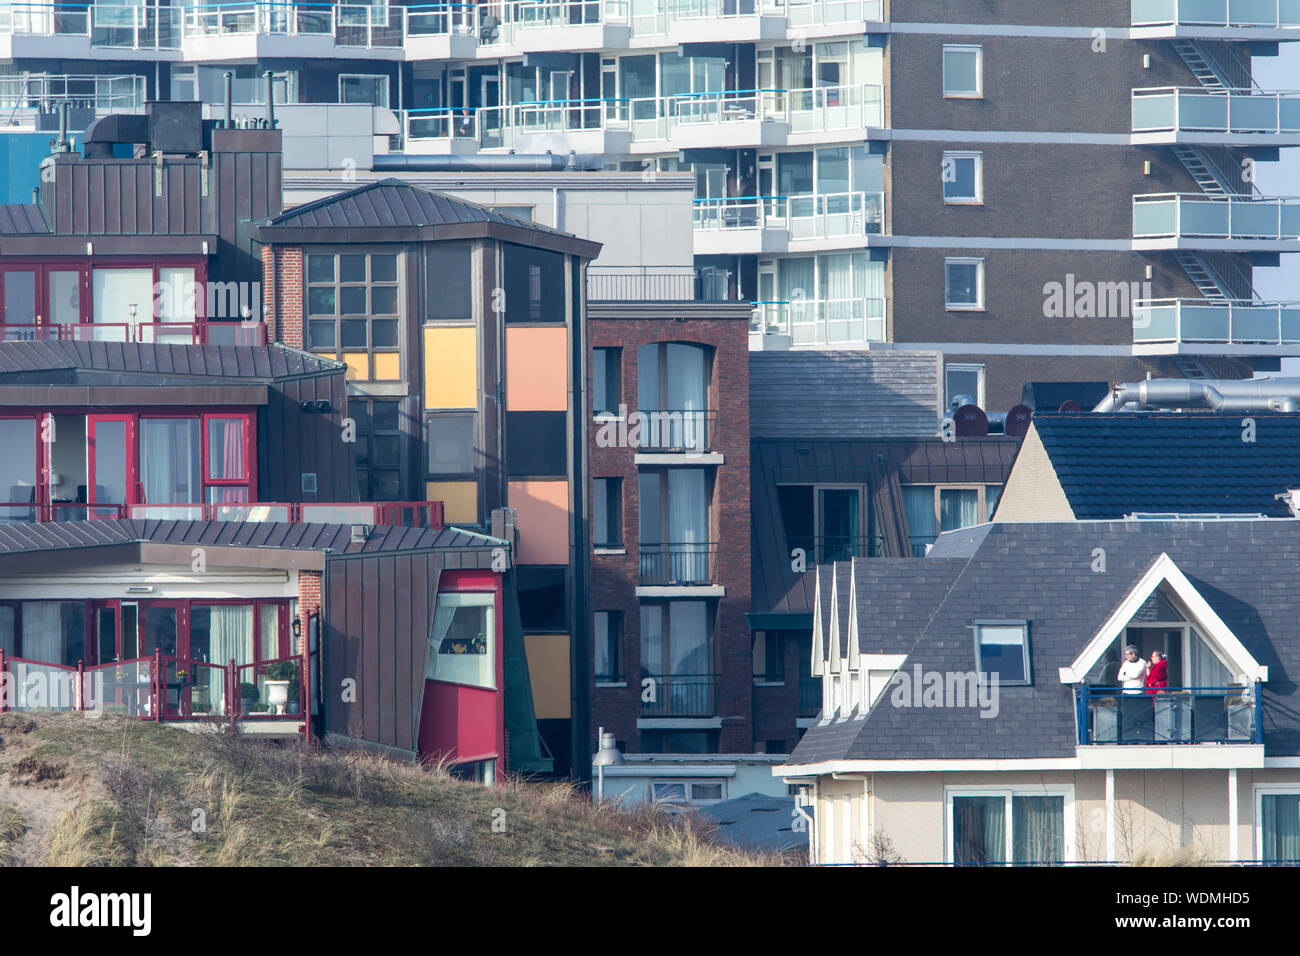 Wohnhäuser, Apartmenthäuser, Hotels  Nordsee Strand von Egmond aan Zee, Nordholland, Niederlande, Stock Photo